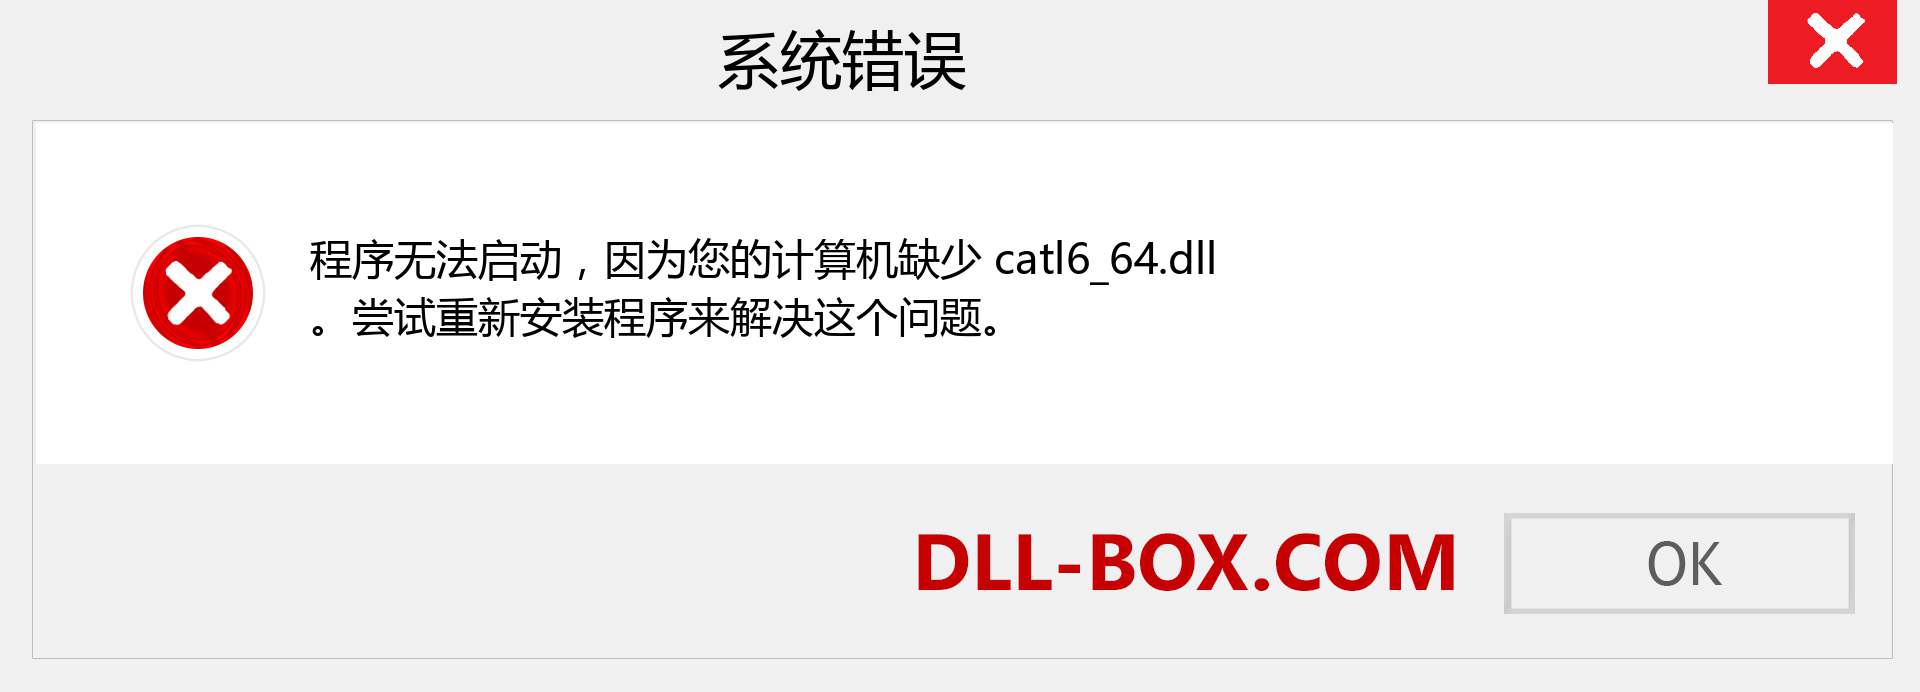 catl6_64.dll 文件丢失？。 适用于 Windows 7、8、10 的下载 - 修复 Windows、照片、图像上的 catl6_64 dll 丢失错误